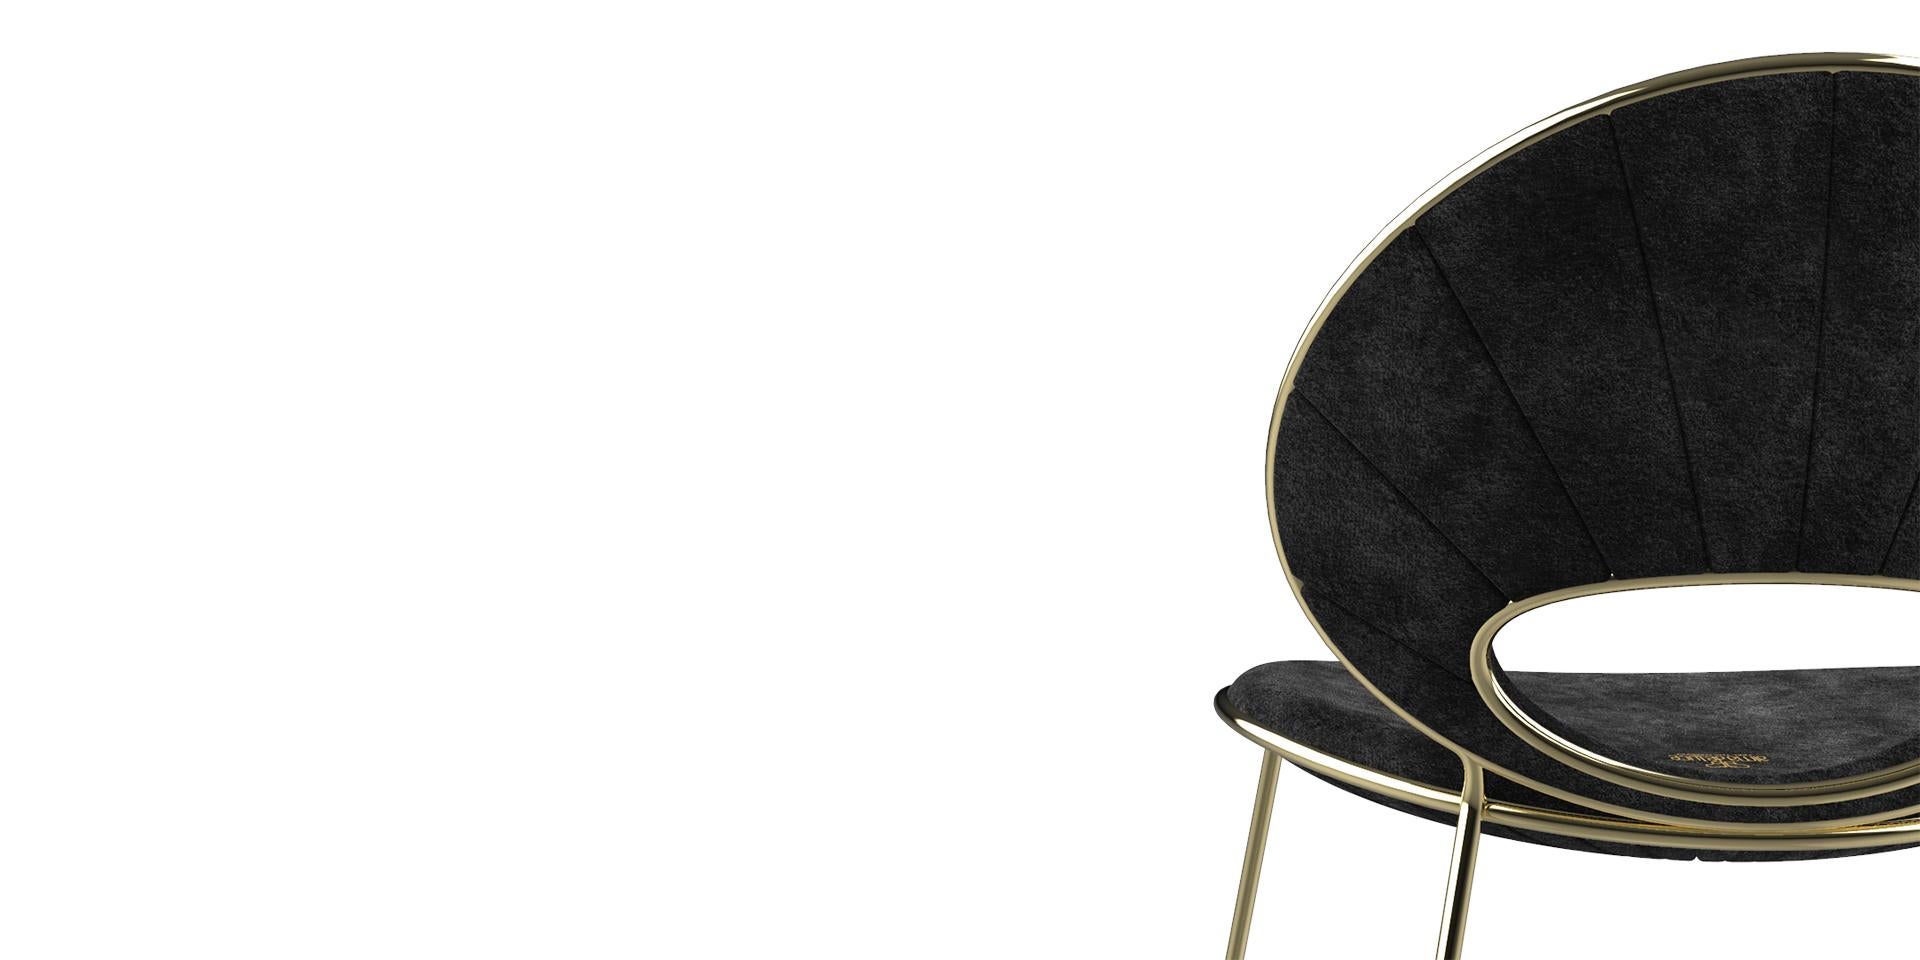 Le tapis Black Pearl est né de la beauté unique que crée la nature. Alma de Luce partage cet héritage spécial et éblouissant à travers ce meuble exclusif pour inspirer des intérieurs uniques et sophistiqués.

Ce patrimoine spécial et éblouissant,